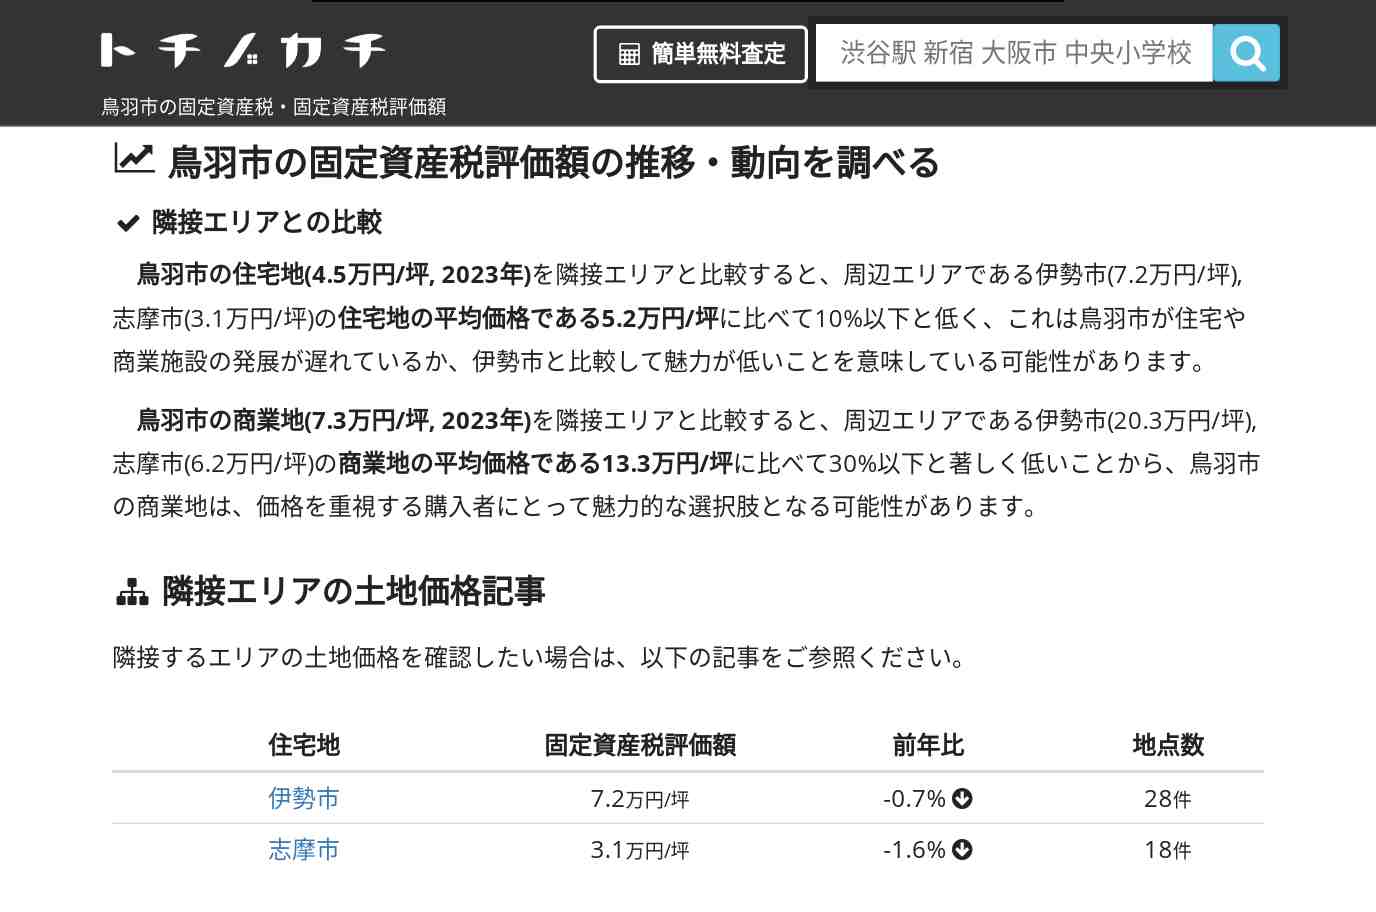 鏡浦小学校(三重県 鳥羽市)周辺の固定資産税・固定資産税評価額 | トチノカチ